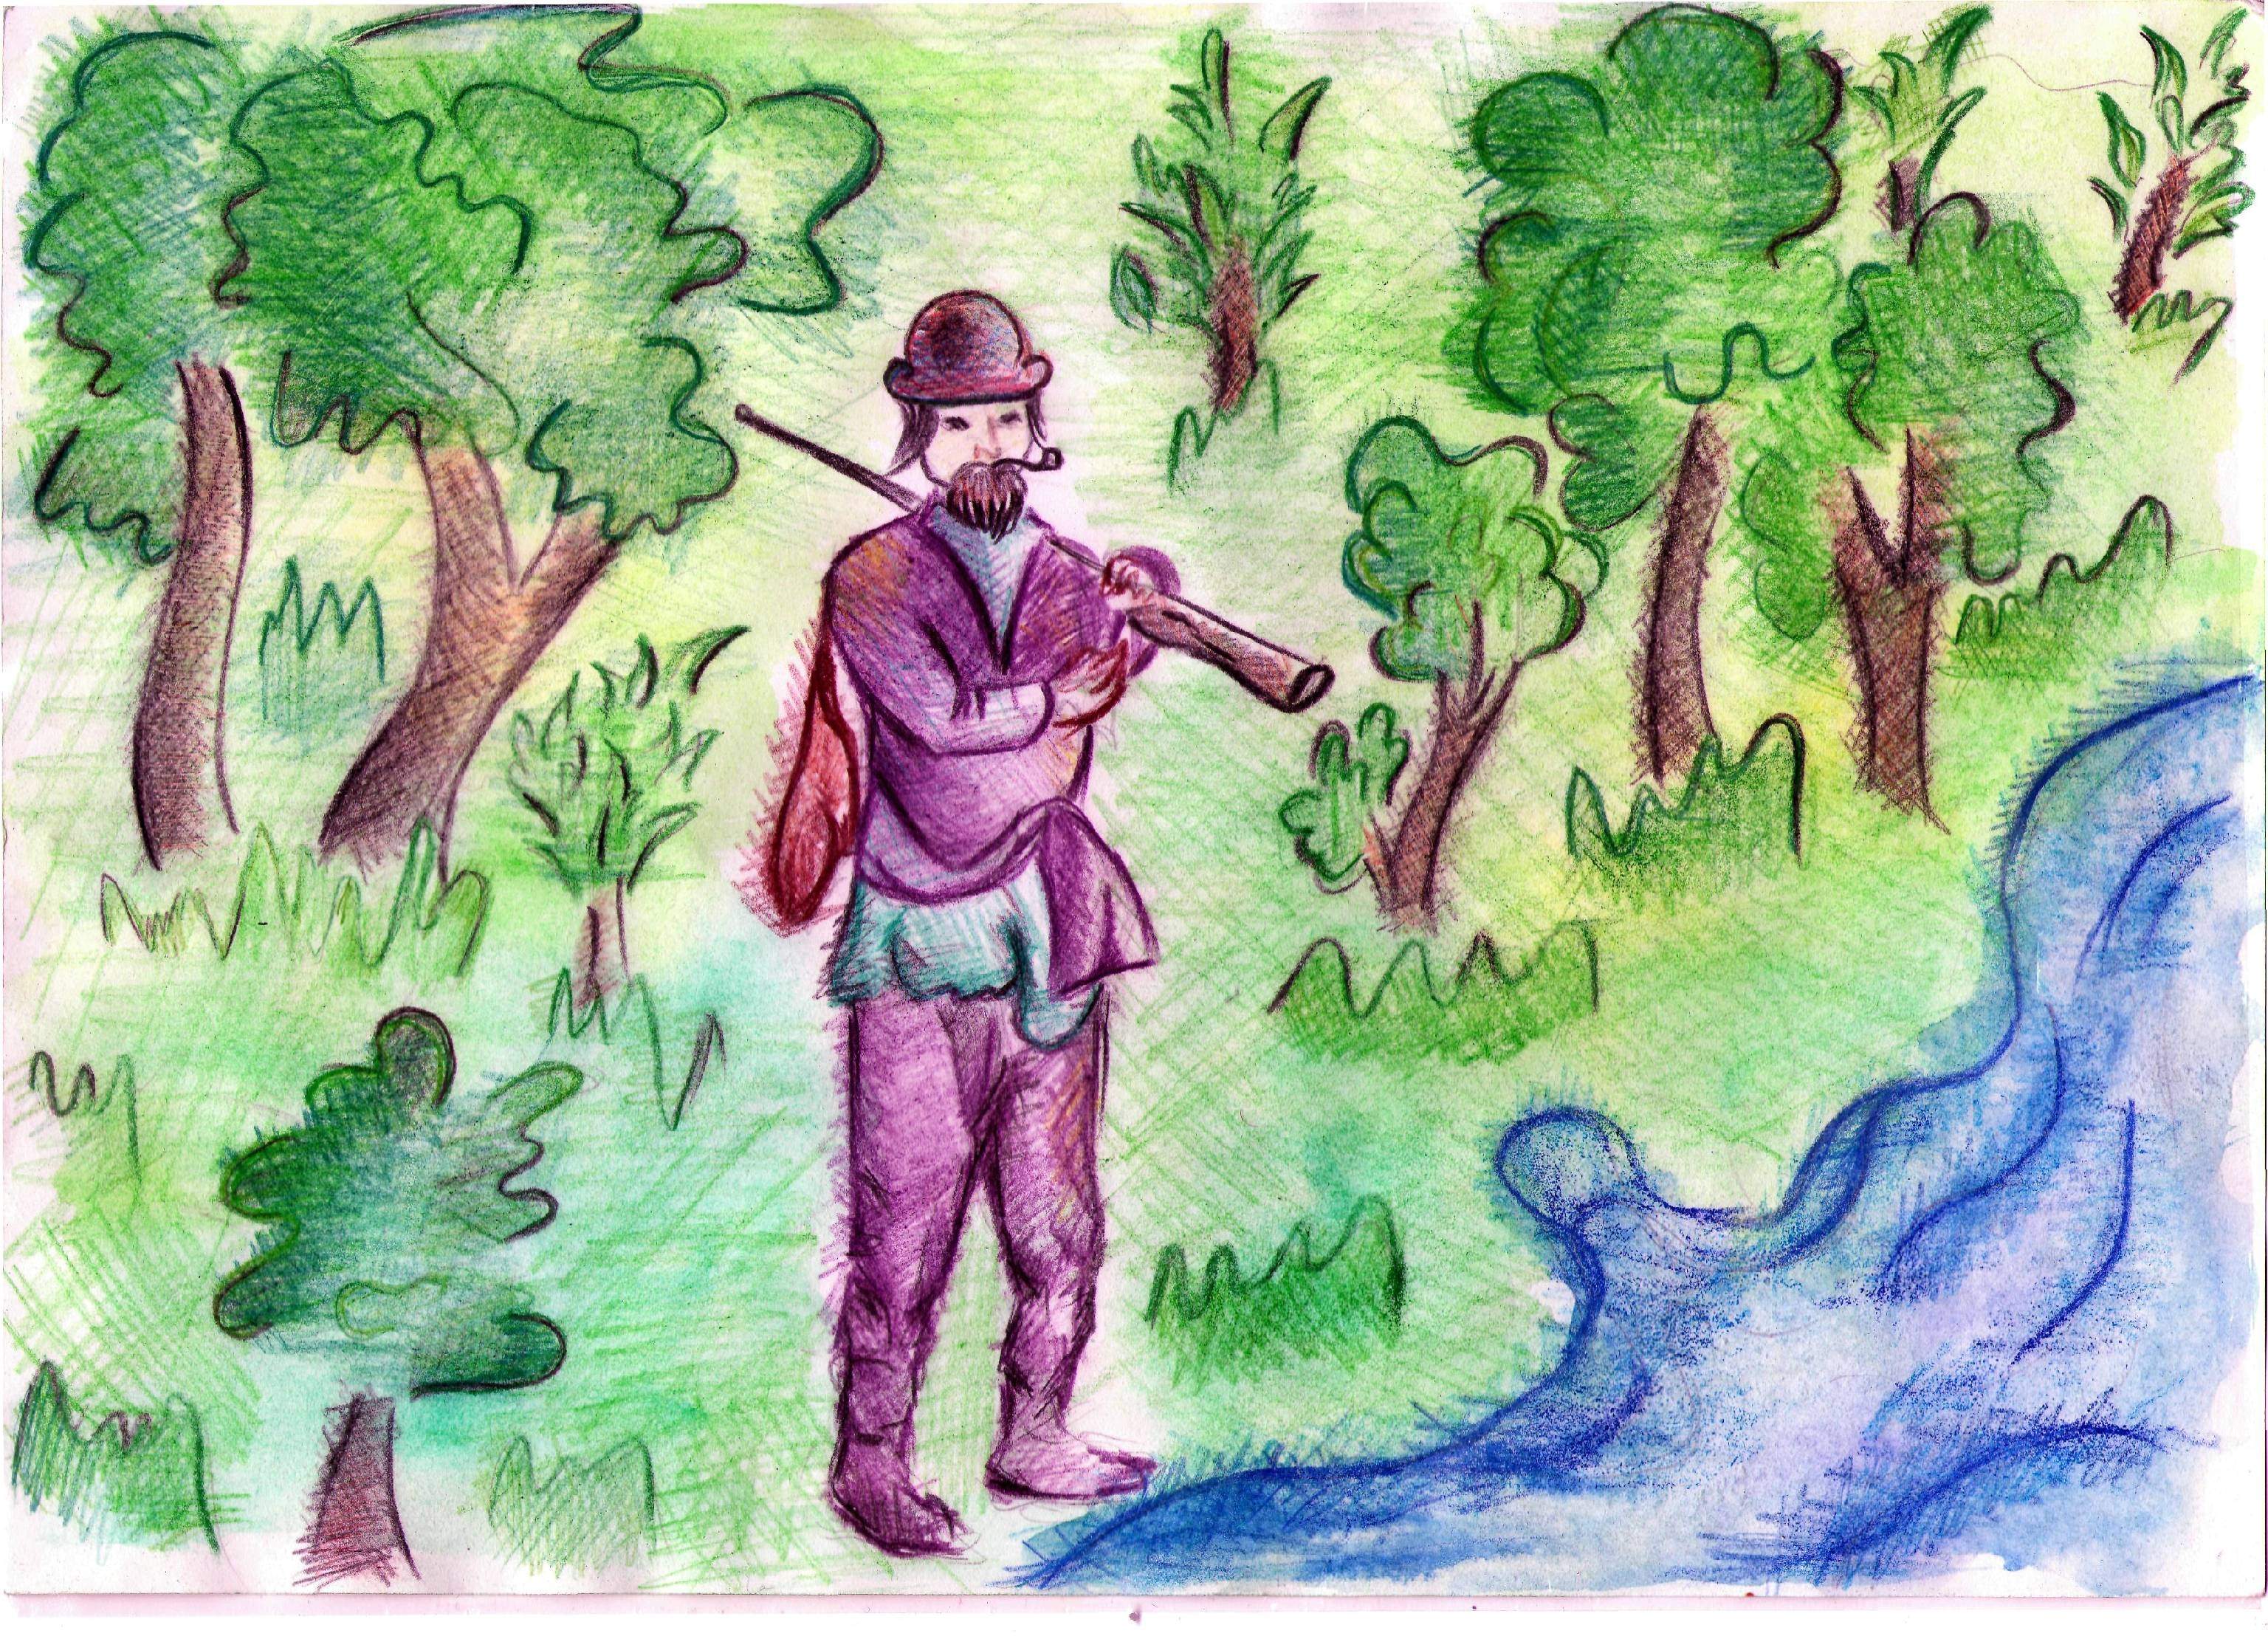 Пароход васюткино озеро. Иллюстрация к рассказу Маттео Фальконе. Иллюстрация к рассказу Васюткино озеро. Маттео Фальконе рисунки к произведению. Иллюстрация Васюткино озеро 5 класс.